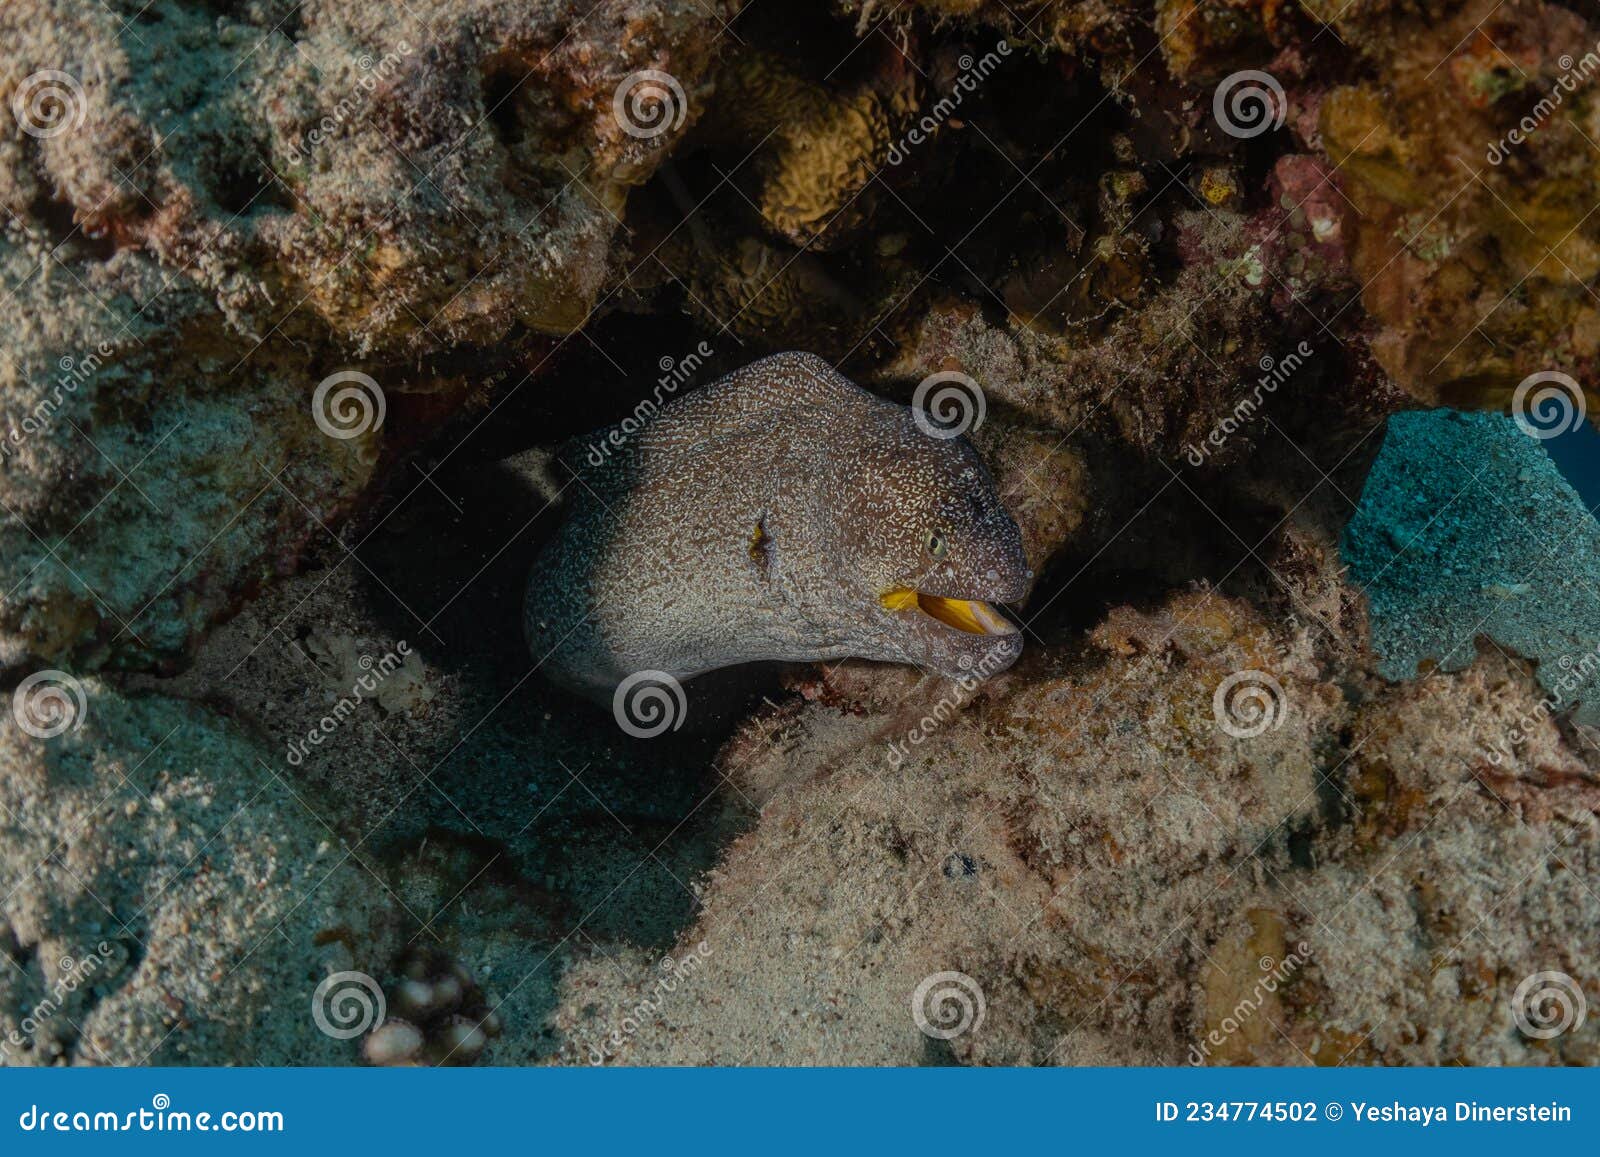 红海裸胸鳝 库存照片. 图片 包括有 野生生物, 马尔代夫, 印第安语, 水生, 海湾, 敌意, 本质 - 240543020